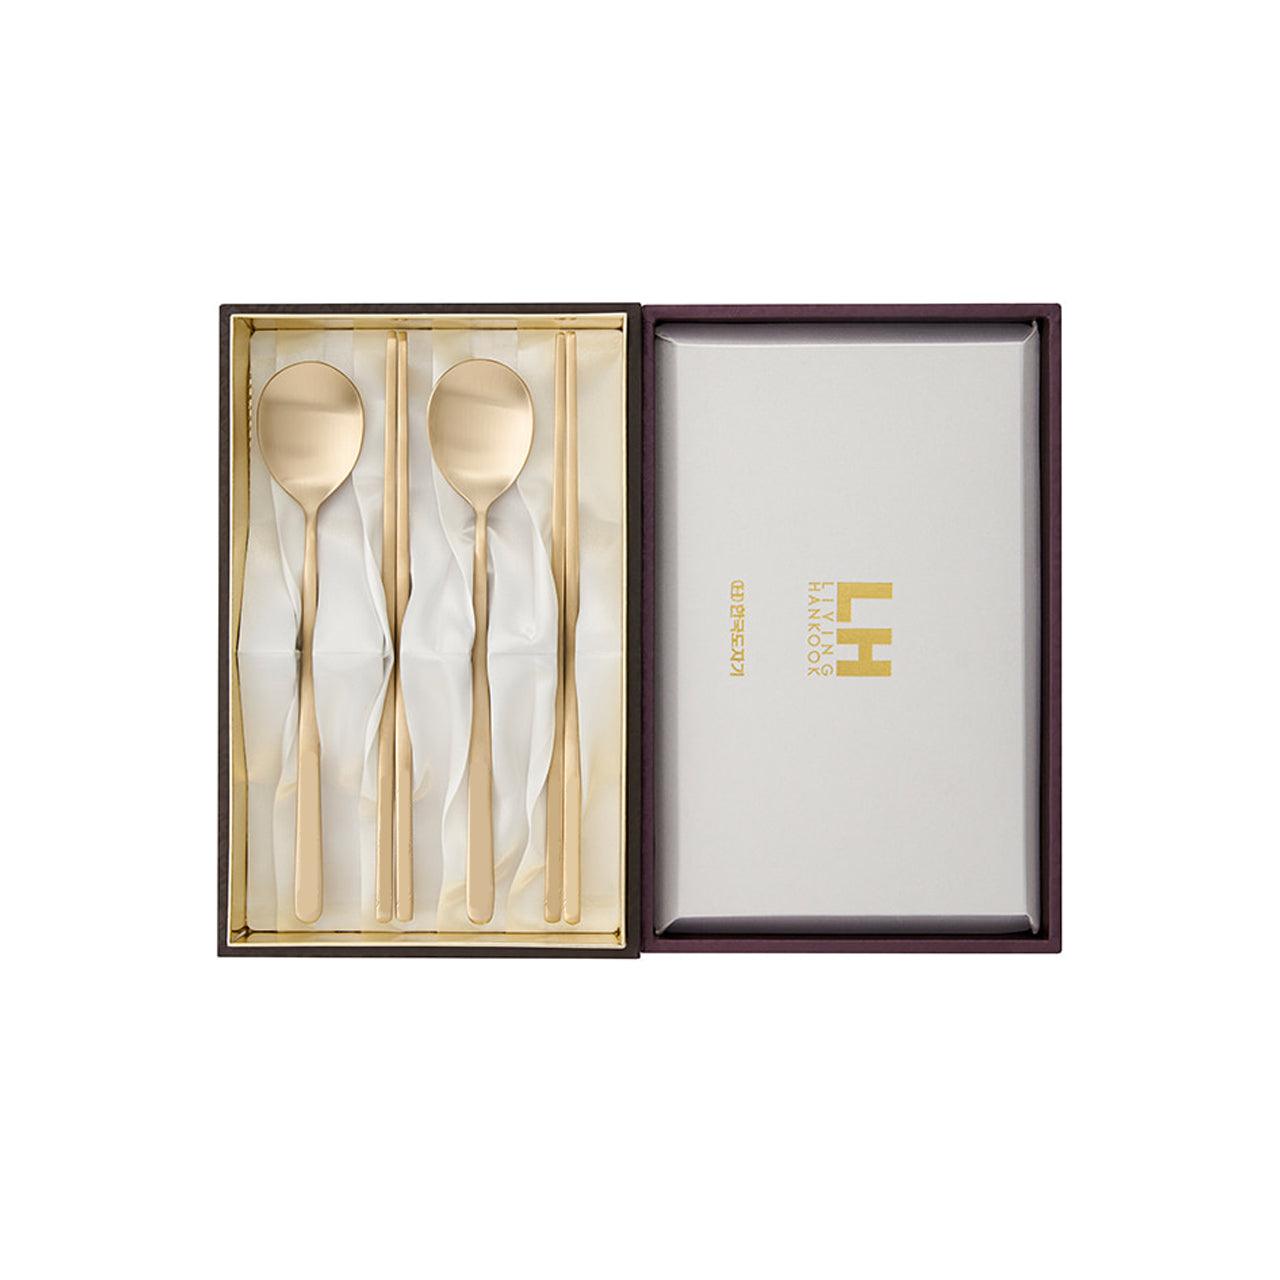 [Ye] Brass Spoon & Chopstick 2 Sets - HANKOOK